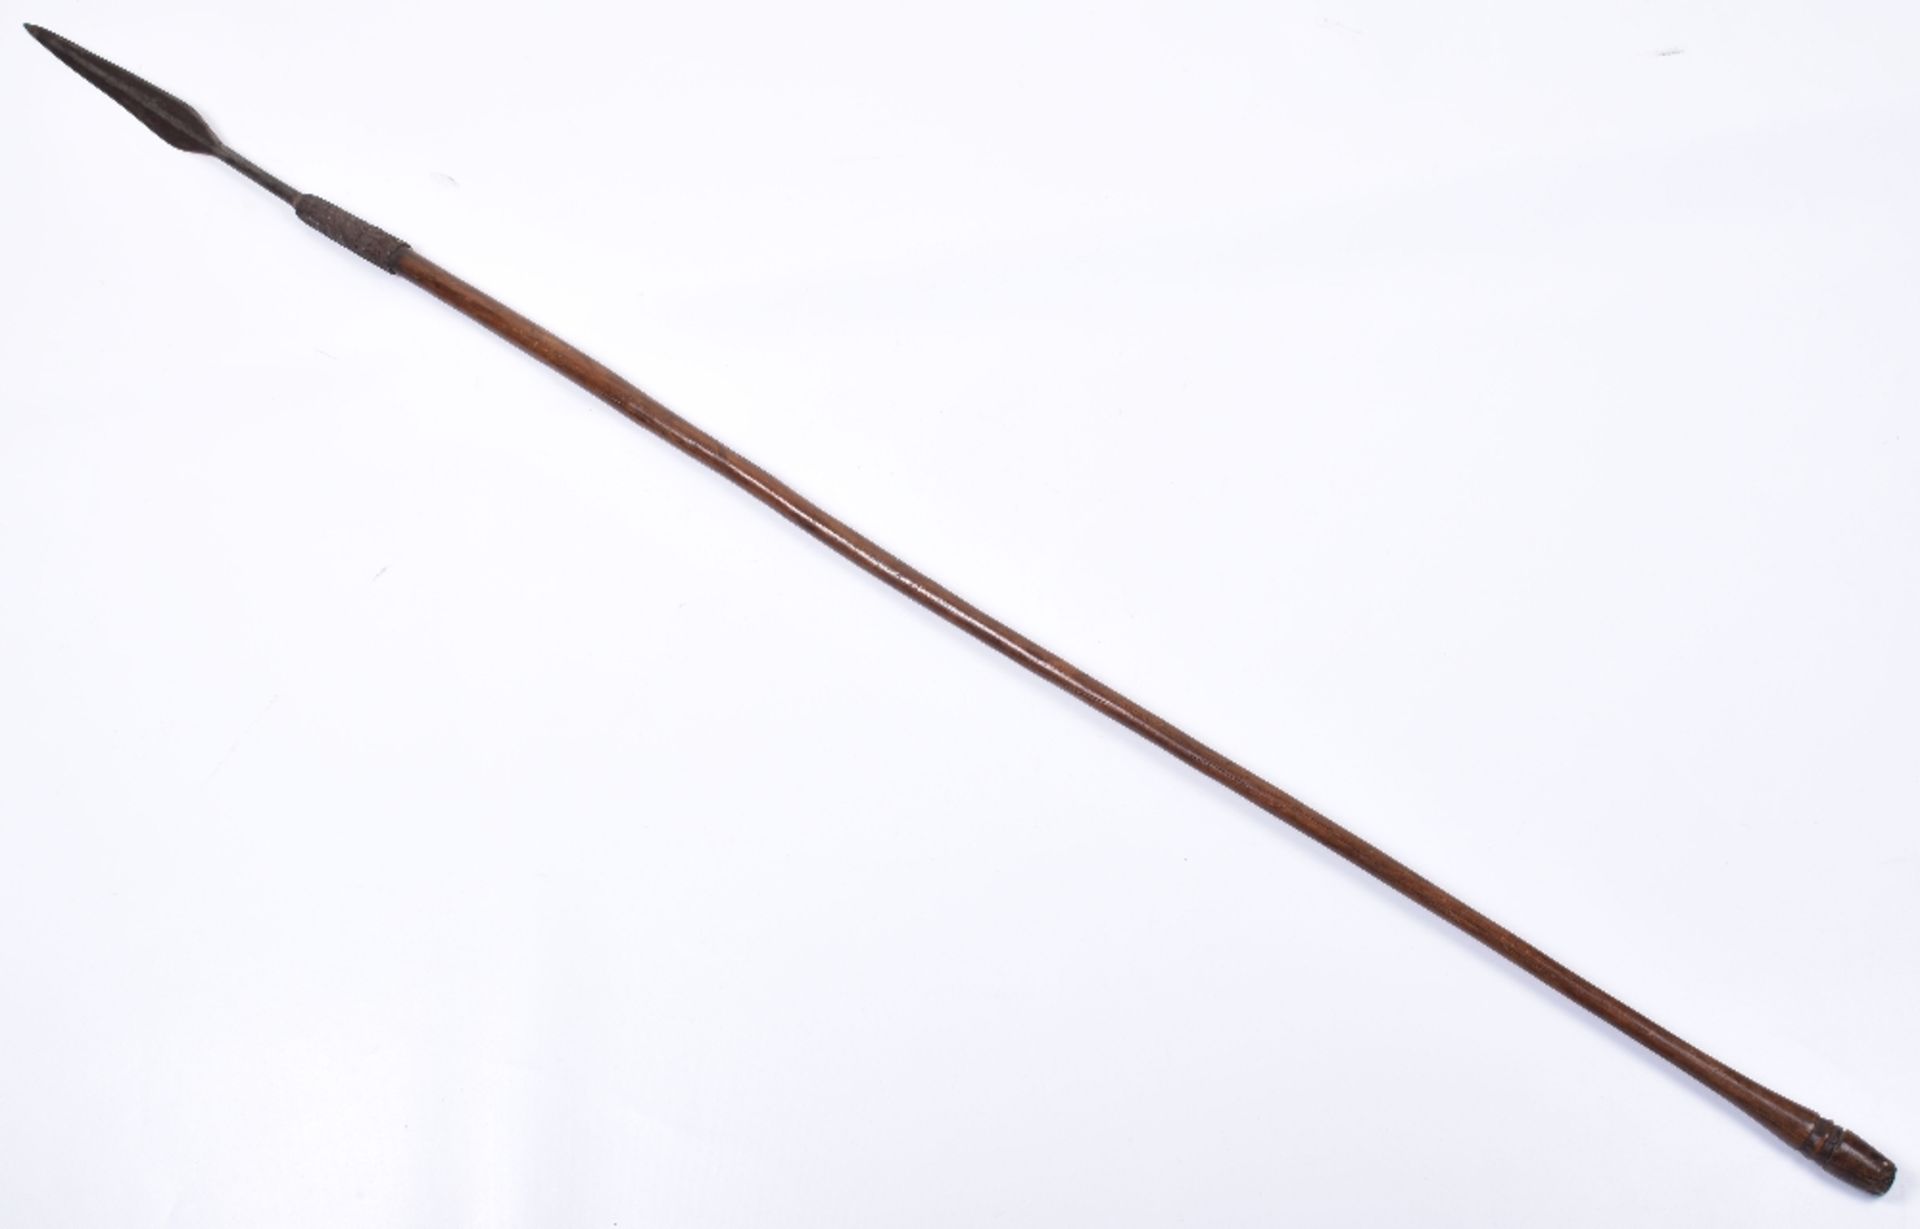 Interesting Early Zulu Spear “Assegai” - Image 2 of 10